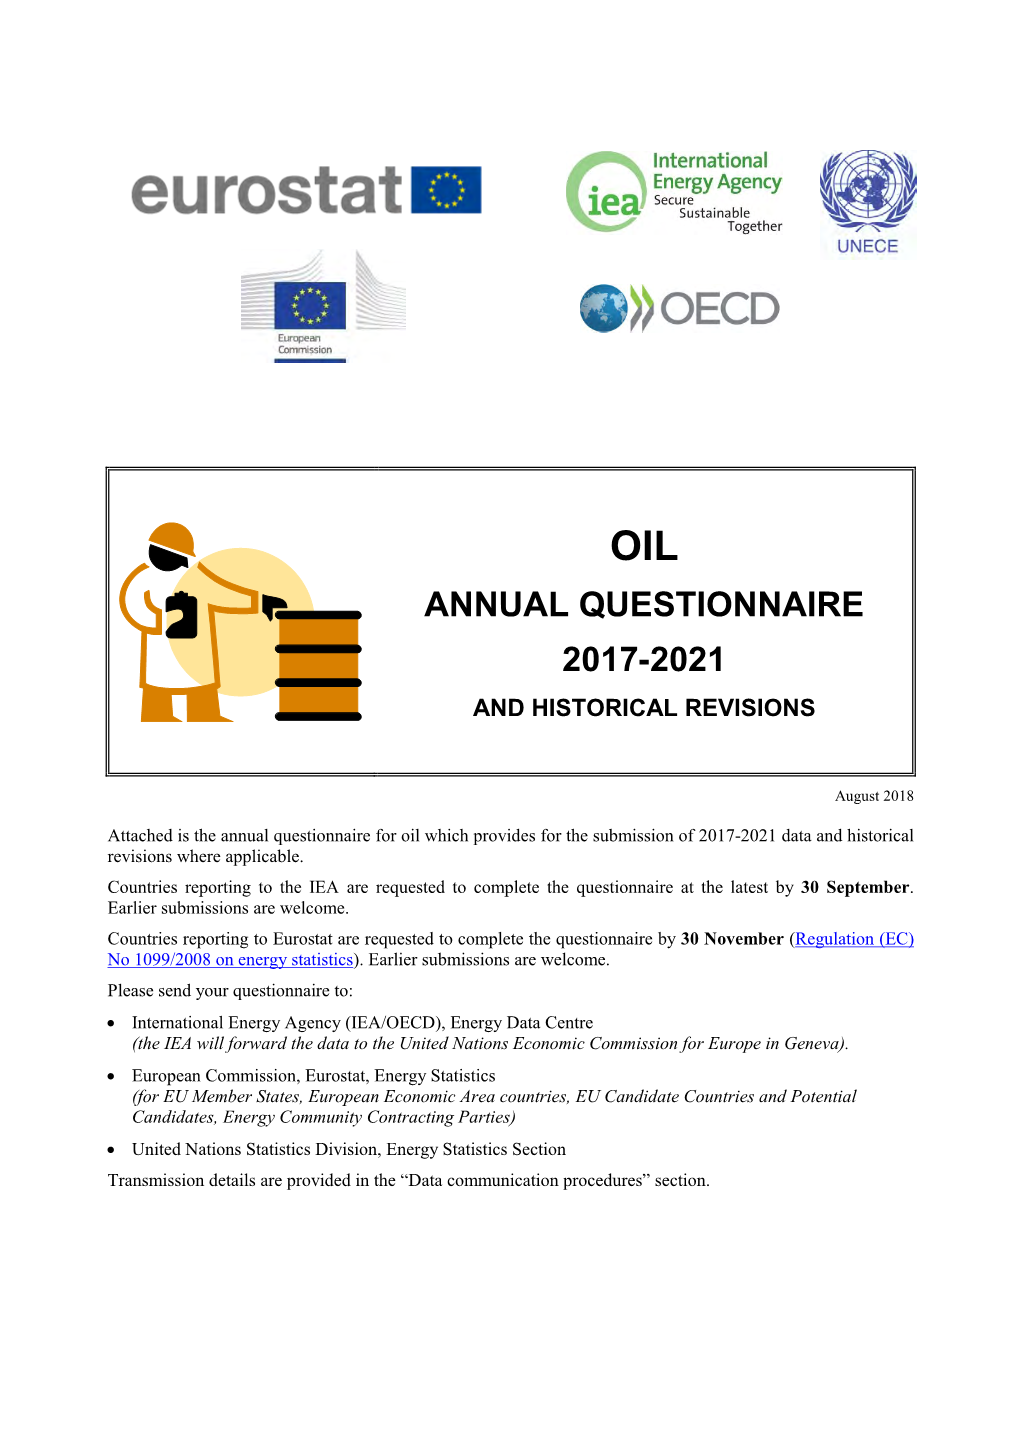 Oil Annual Questionnaire 2017-2021